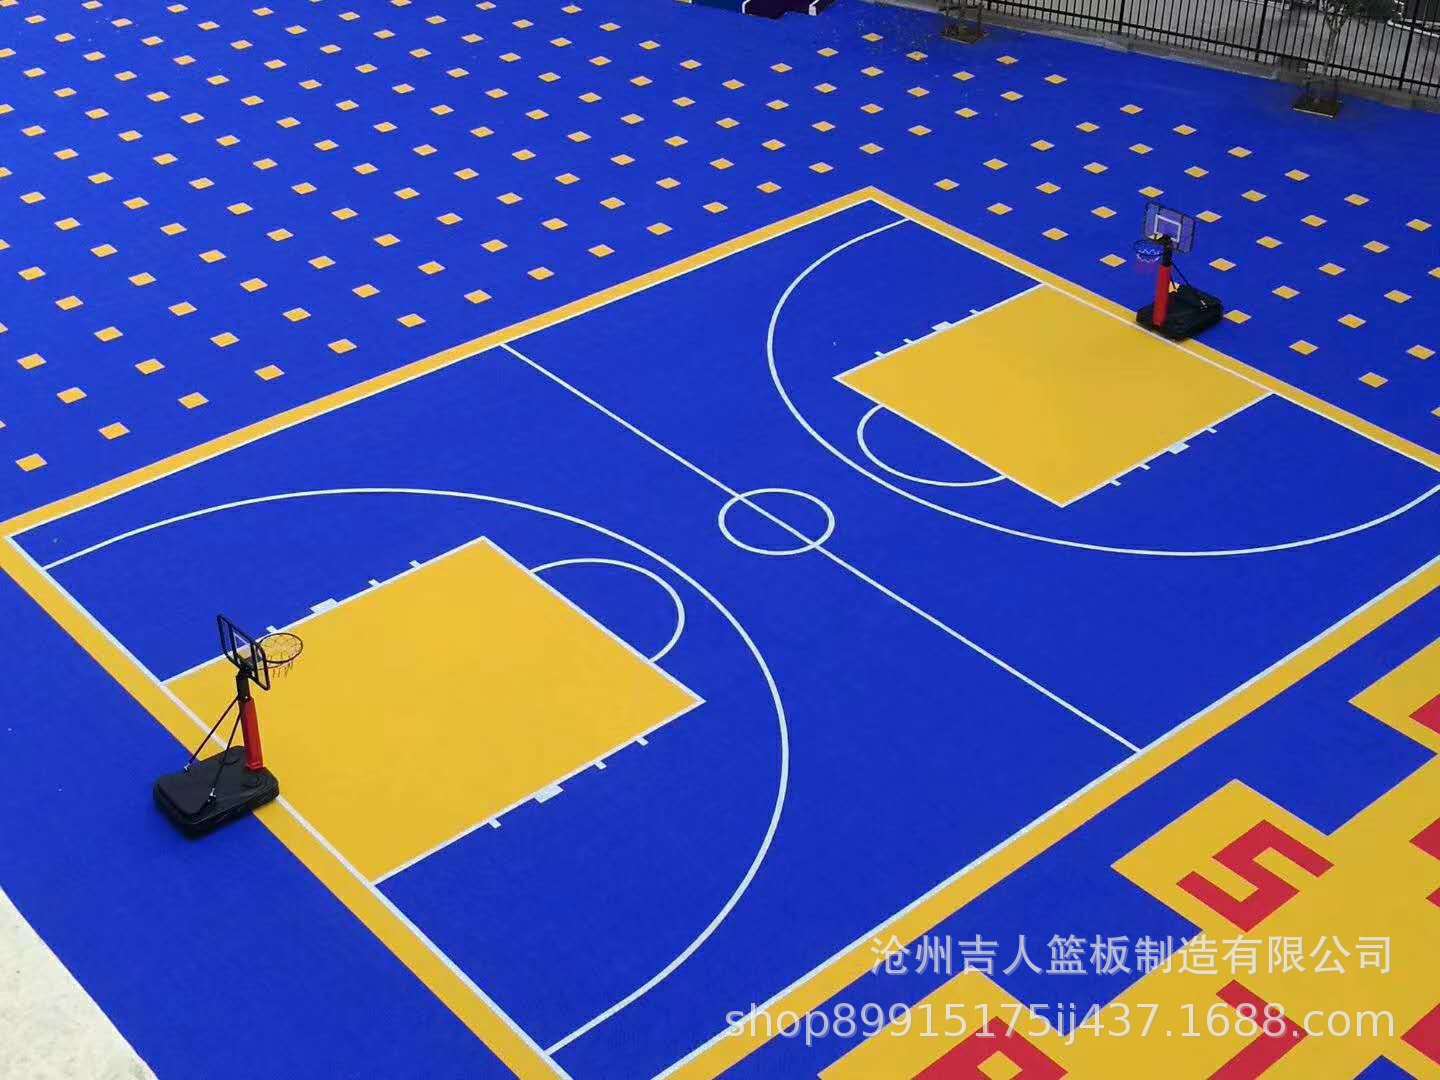 学校篮球场悬浮拼装地板 - 地坪方案 - 四川秀邦地坪工程有限公司